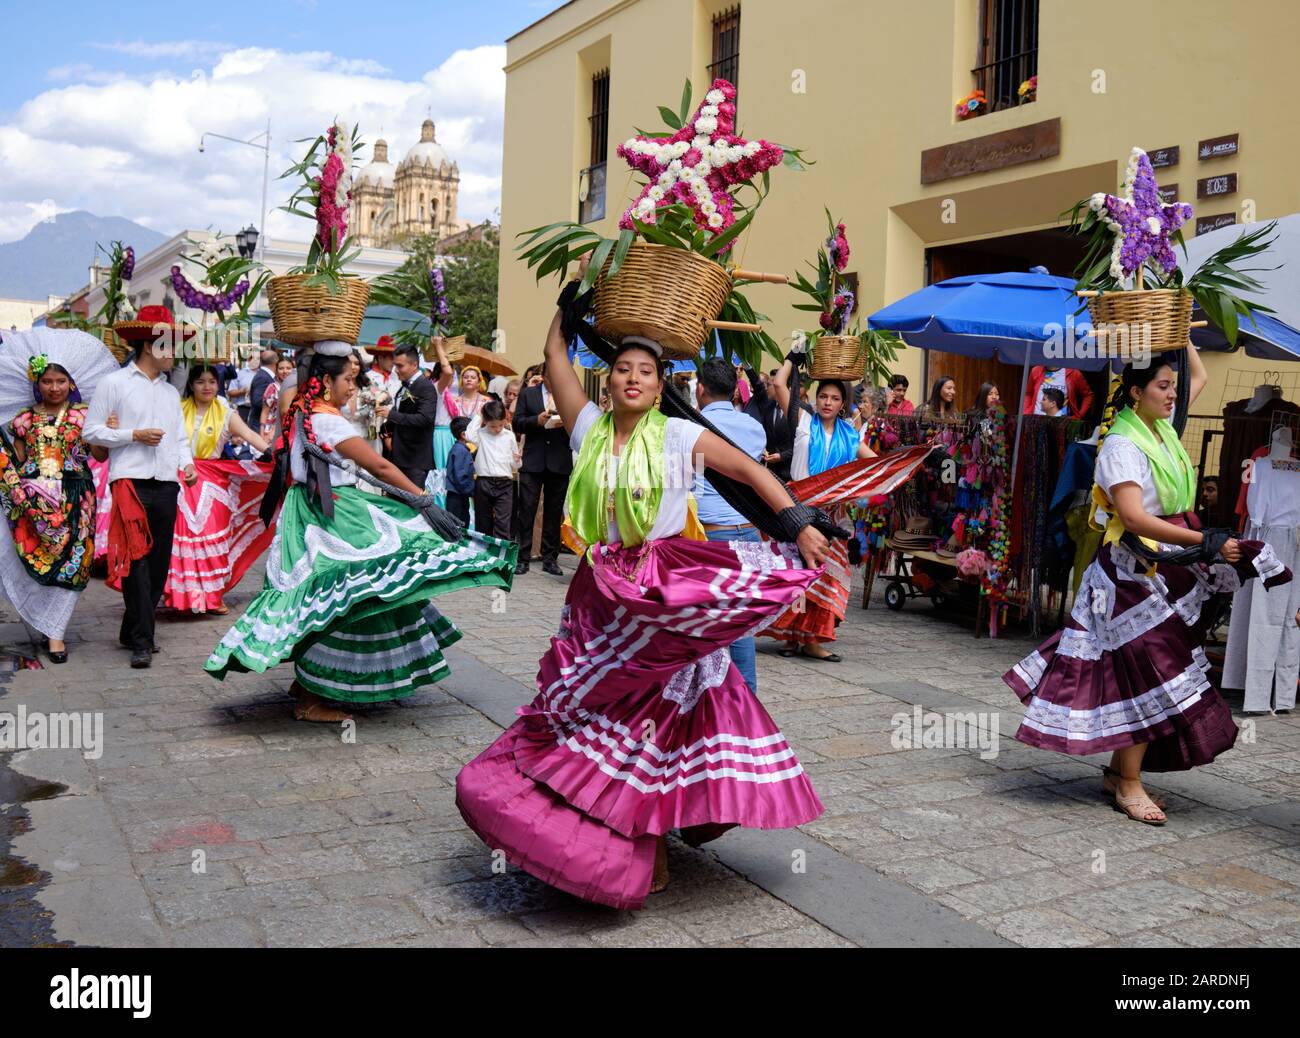 Frau tanzt in fließenden traditionellen Outfit mit Blumenkorb Teil der traditionellen Parade auf den Straßen von Oaxaca. Stockfoto